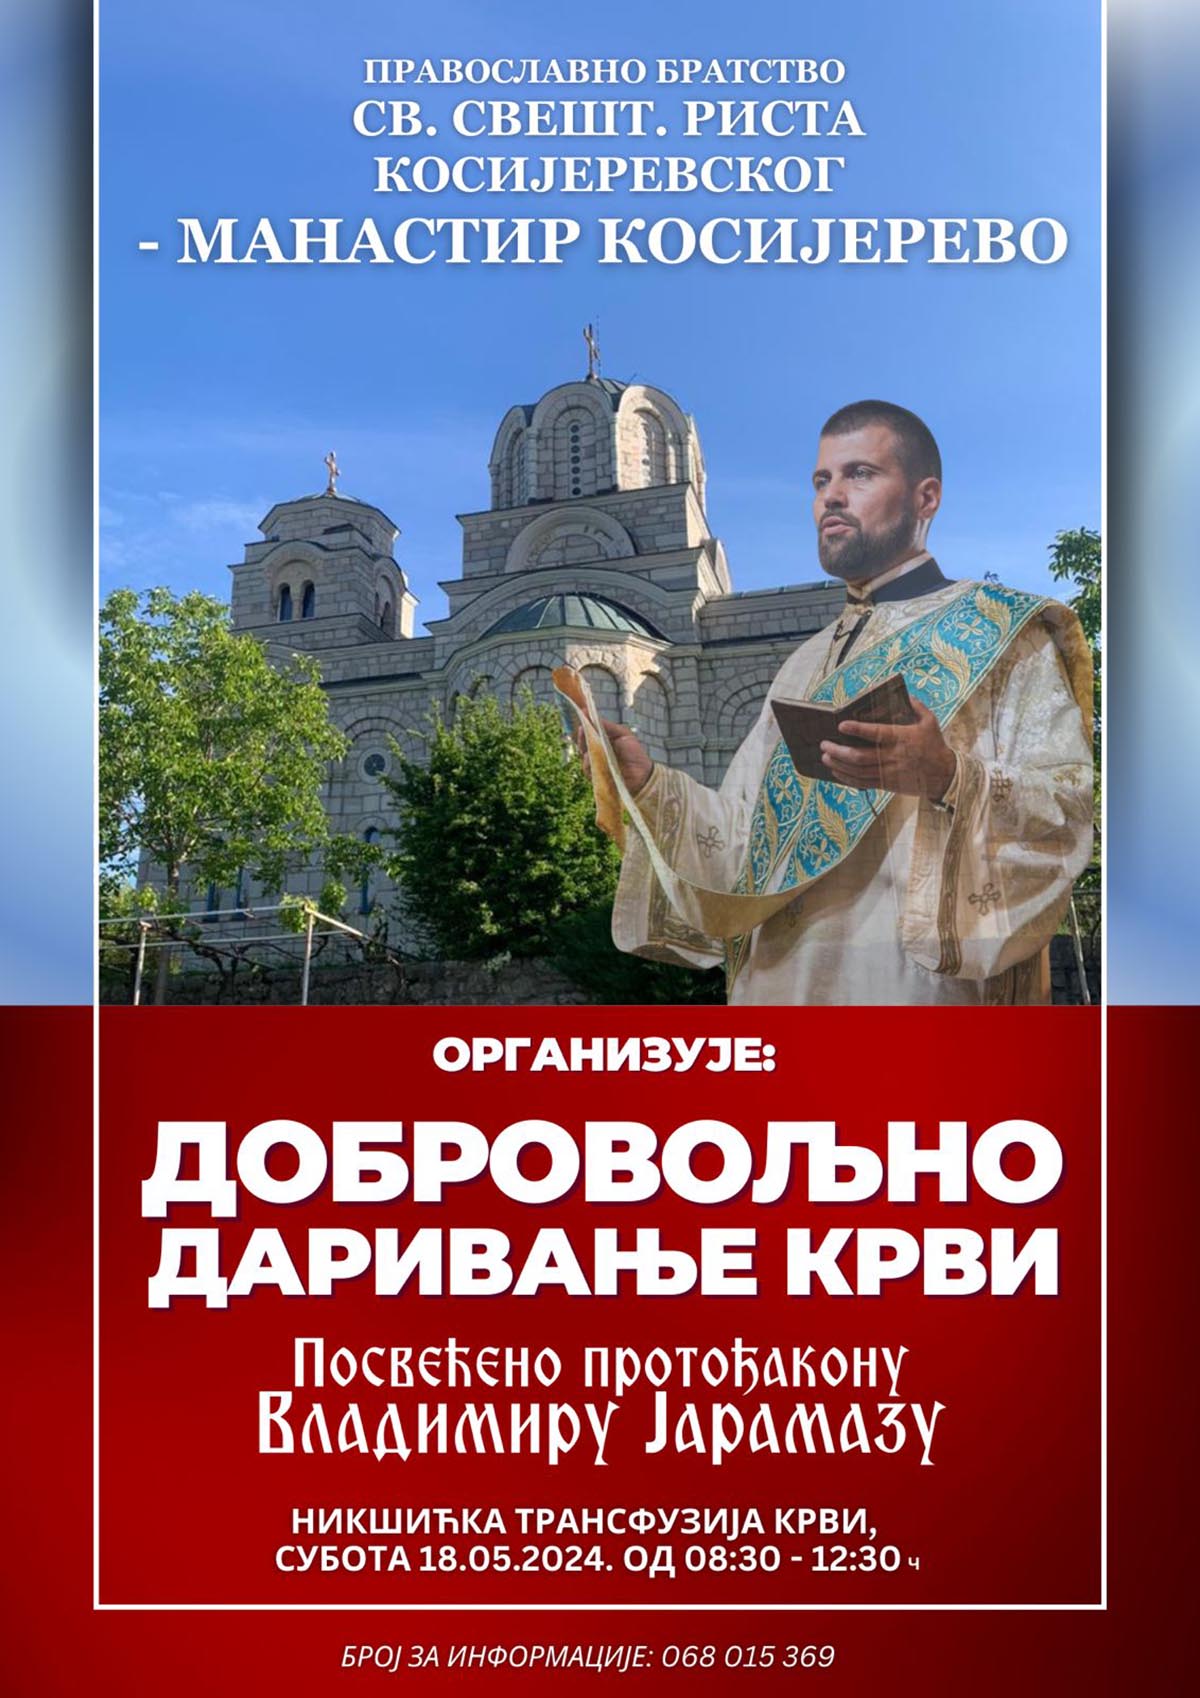 Добовољно давање крви посвећено протођакону Владимиру Јарамазу